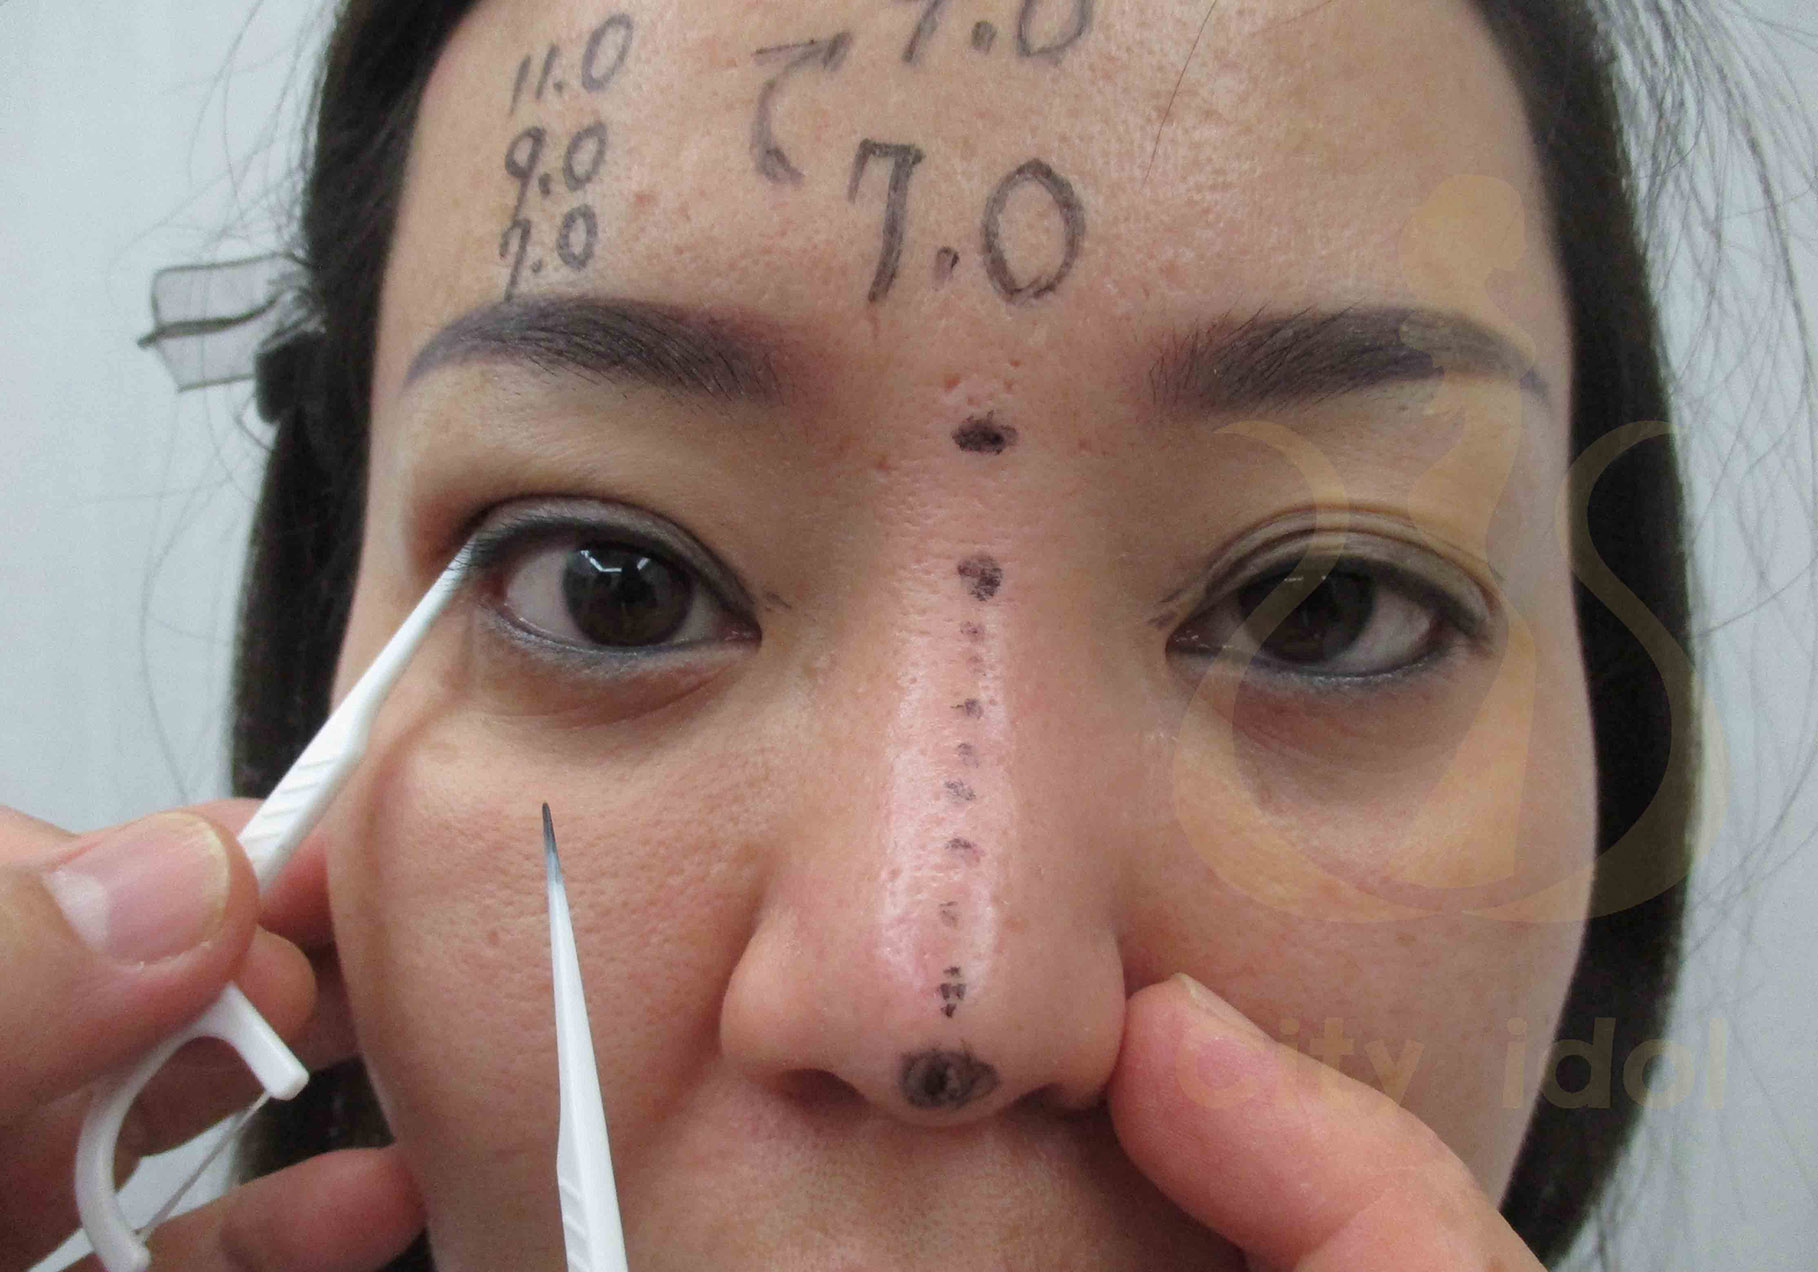 術 前 劃 記 號 ( 隆 鼻 及 牙 纖 模 擬 不 同 寬 度 的 釘 書 機 雙 眼 皮 )